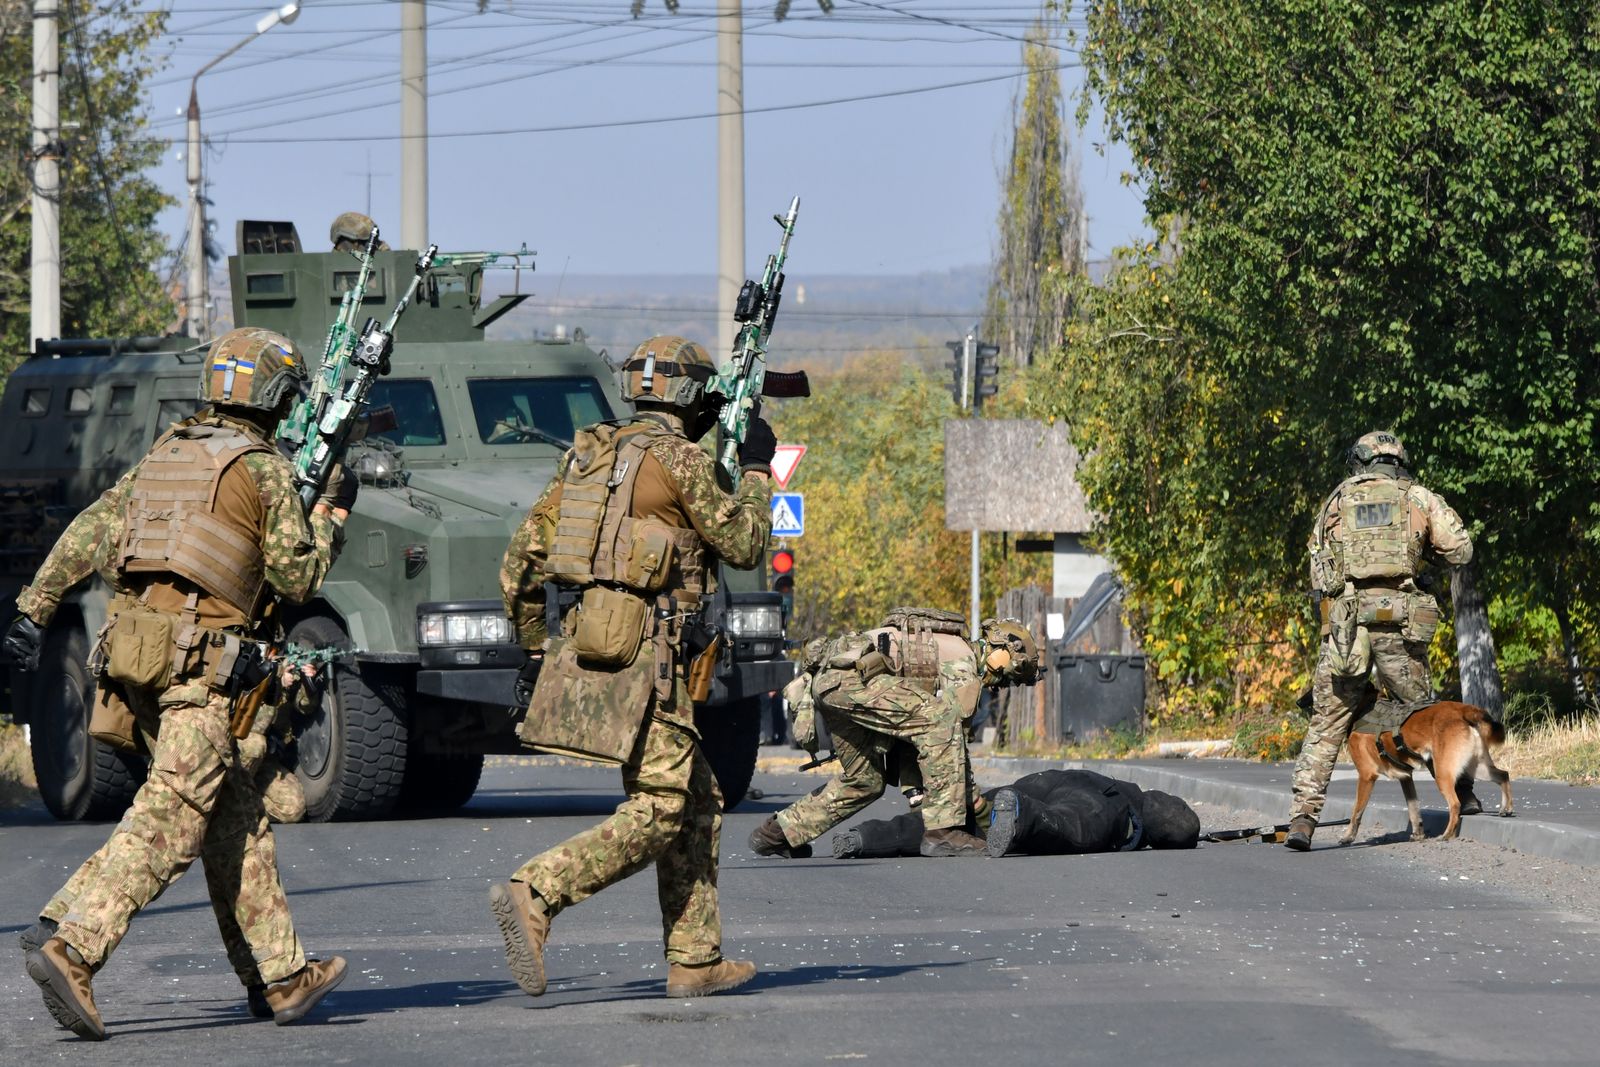 جنود من القوات المسلحة الأميركية خلال عملية عسكرية في سلافيانسك شرقي البلاد 13 أكتوبر 2020 - AFP